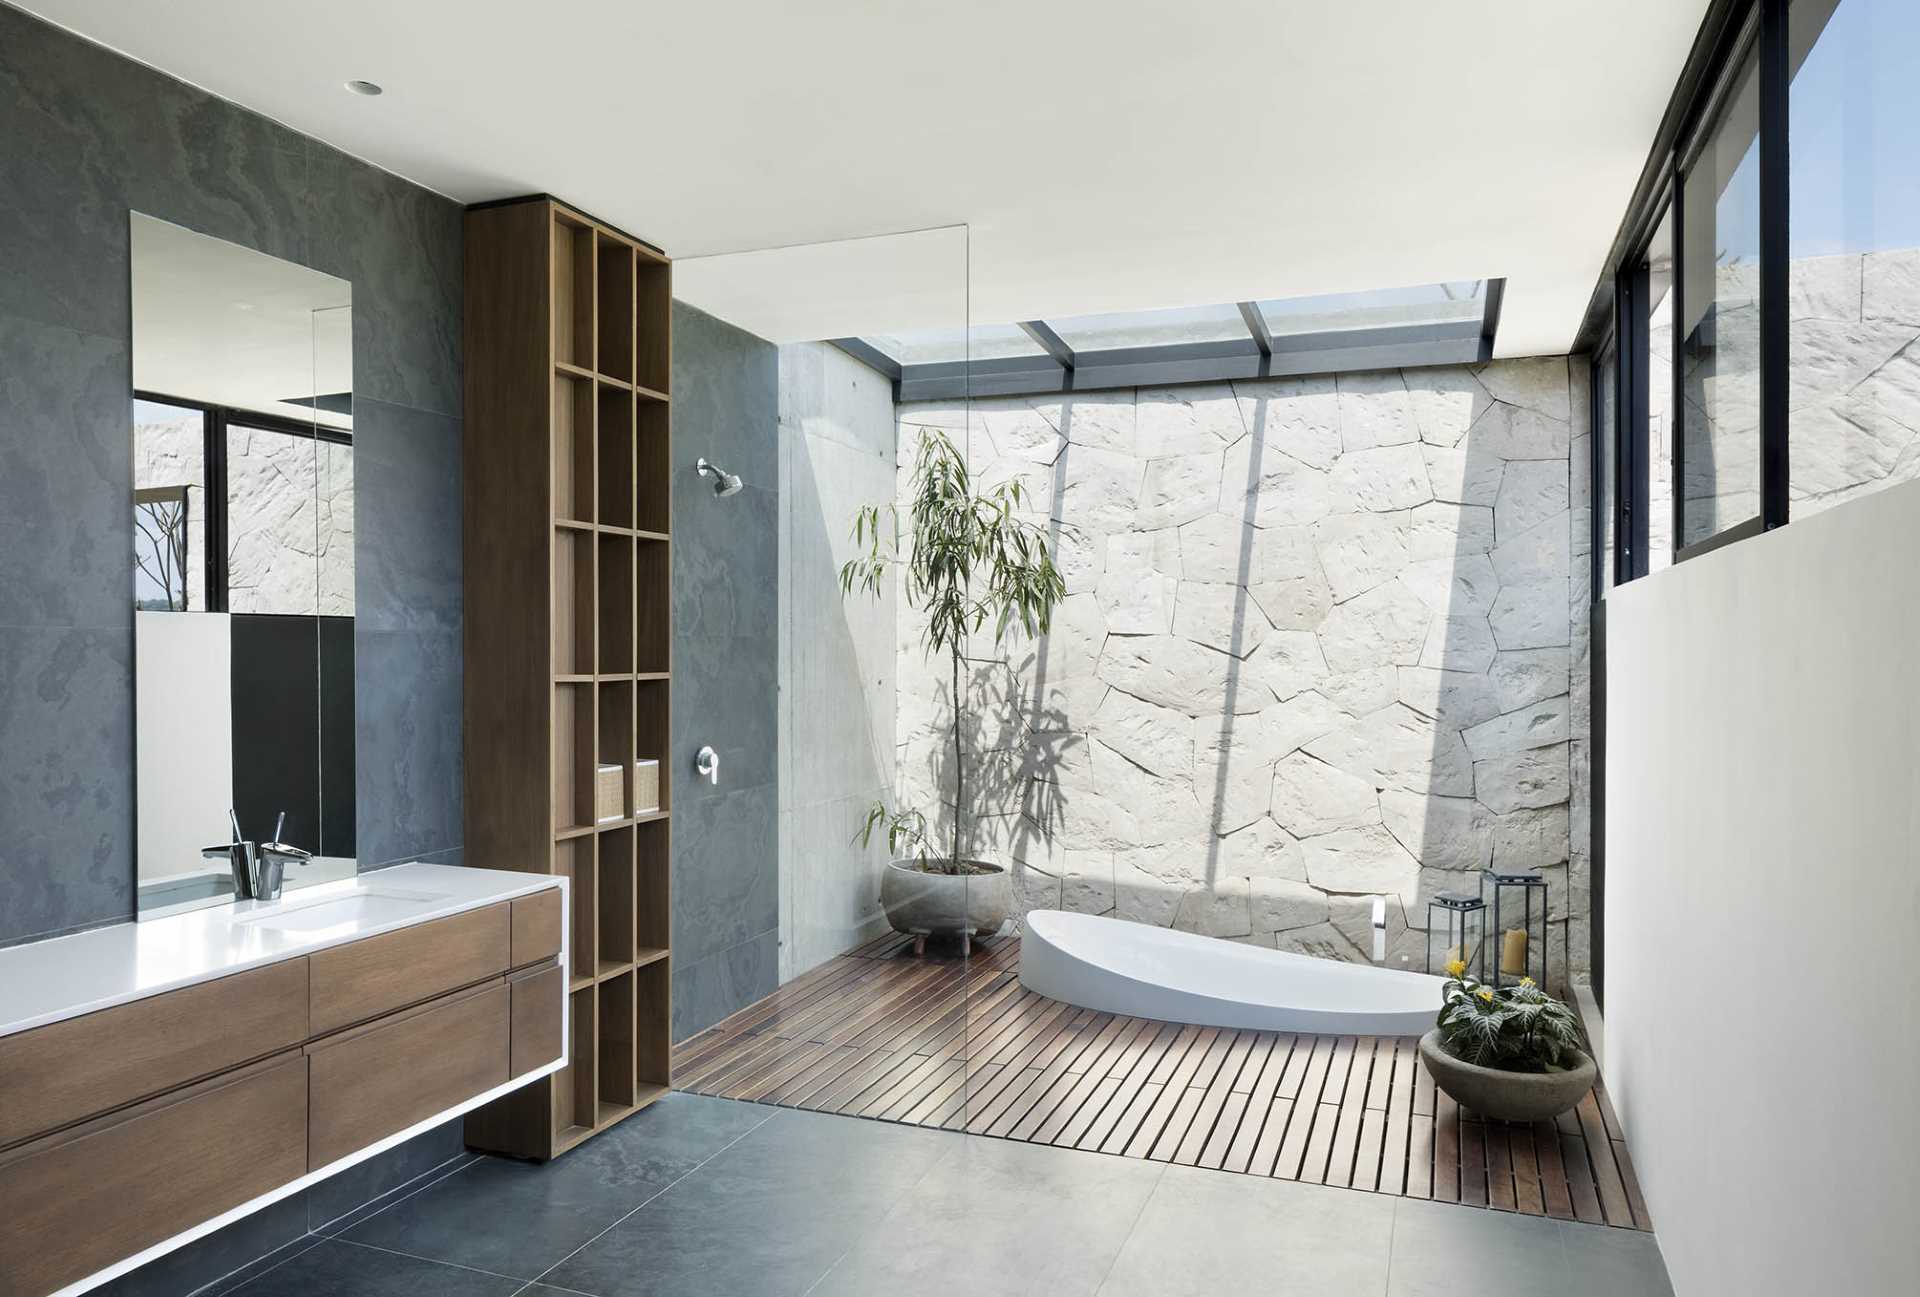 A modern bathroom with a sunken bathtub.